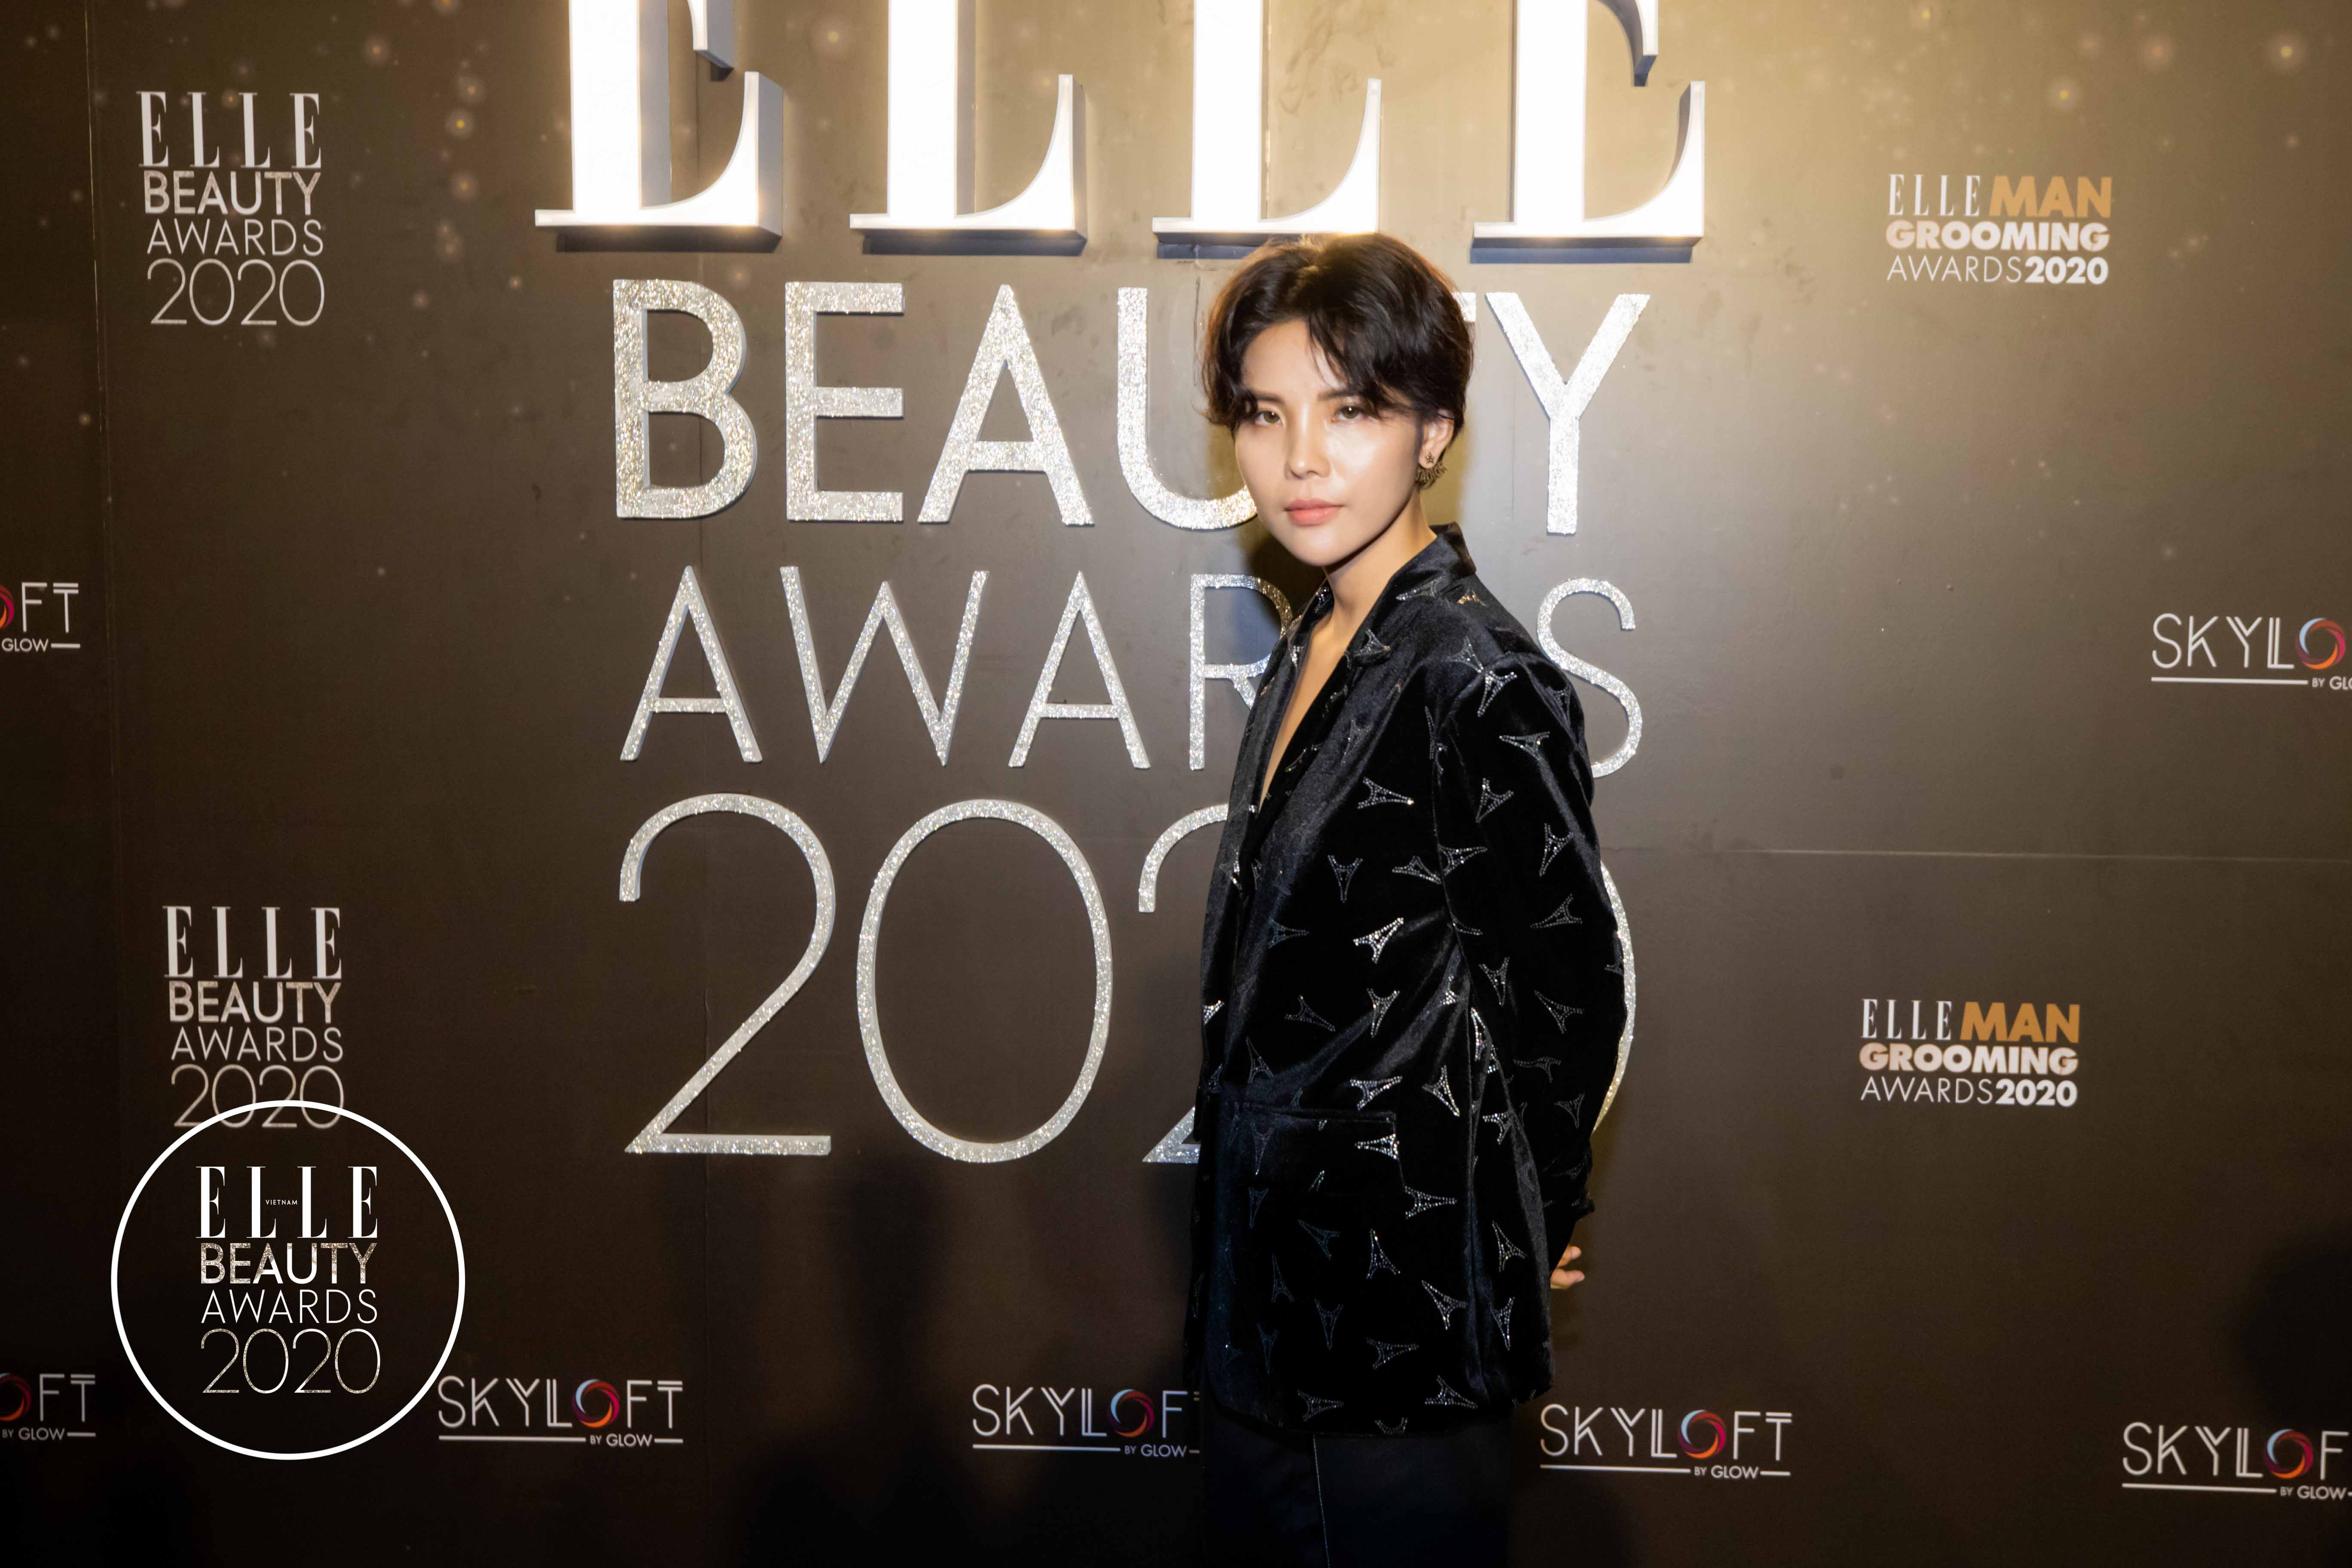 vu cat tuong-elle beauty awards 2020-elleman-1219